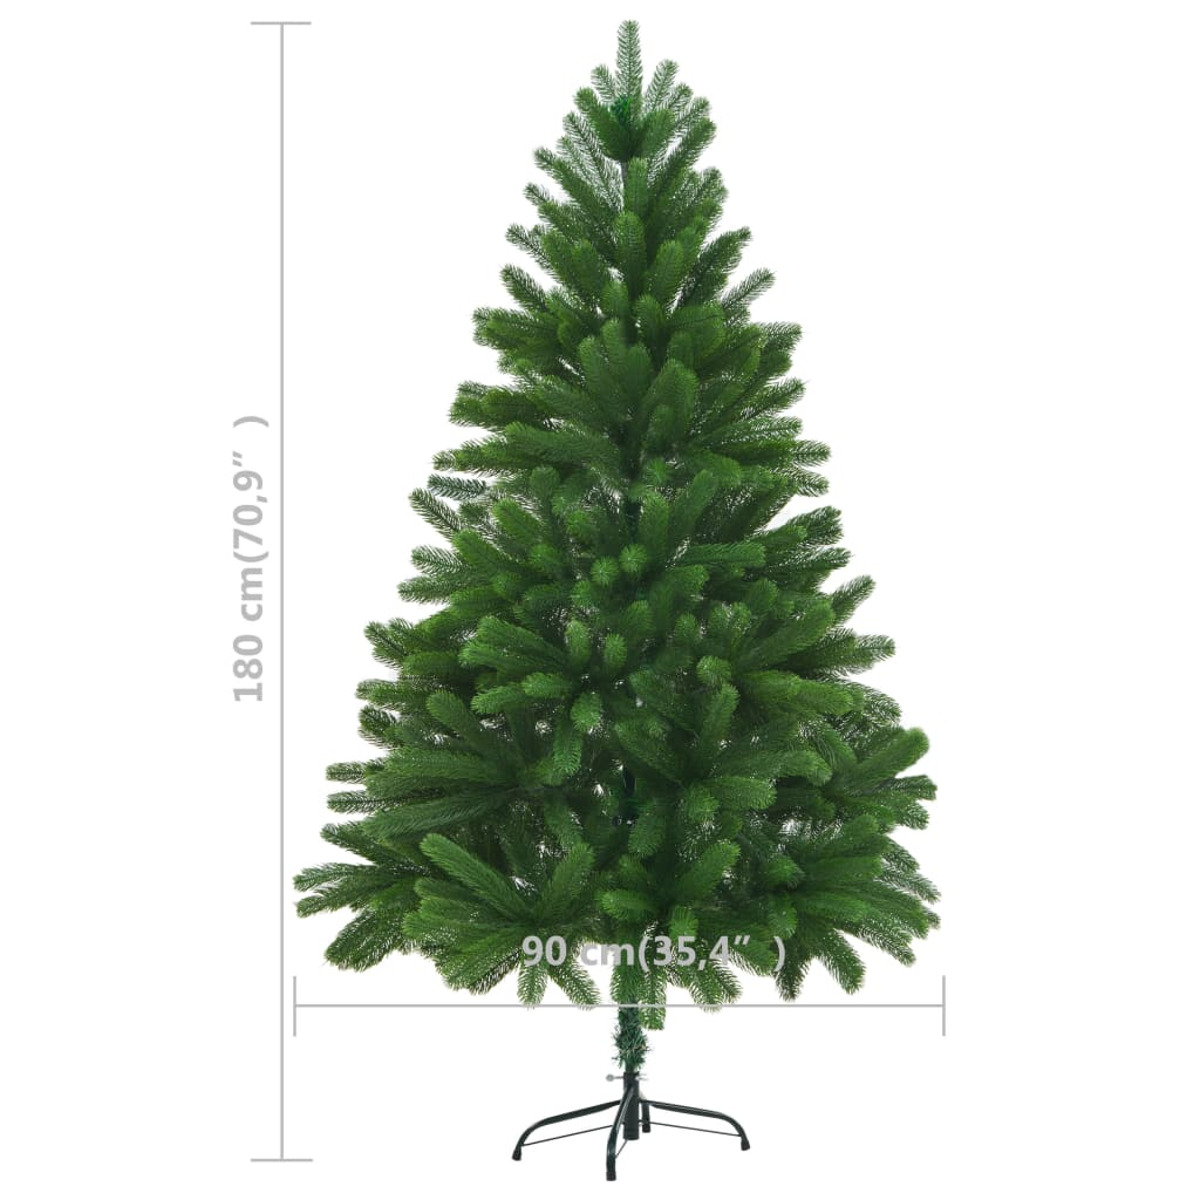 VIDAXL 246399 Weihnachtsbaum